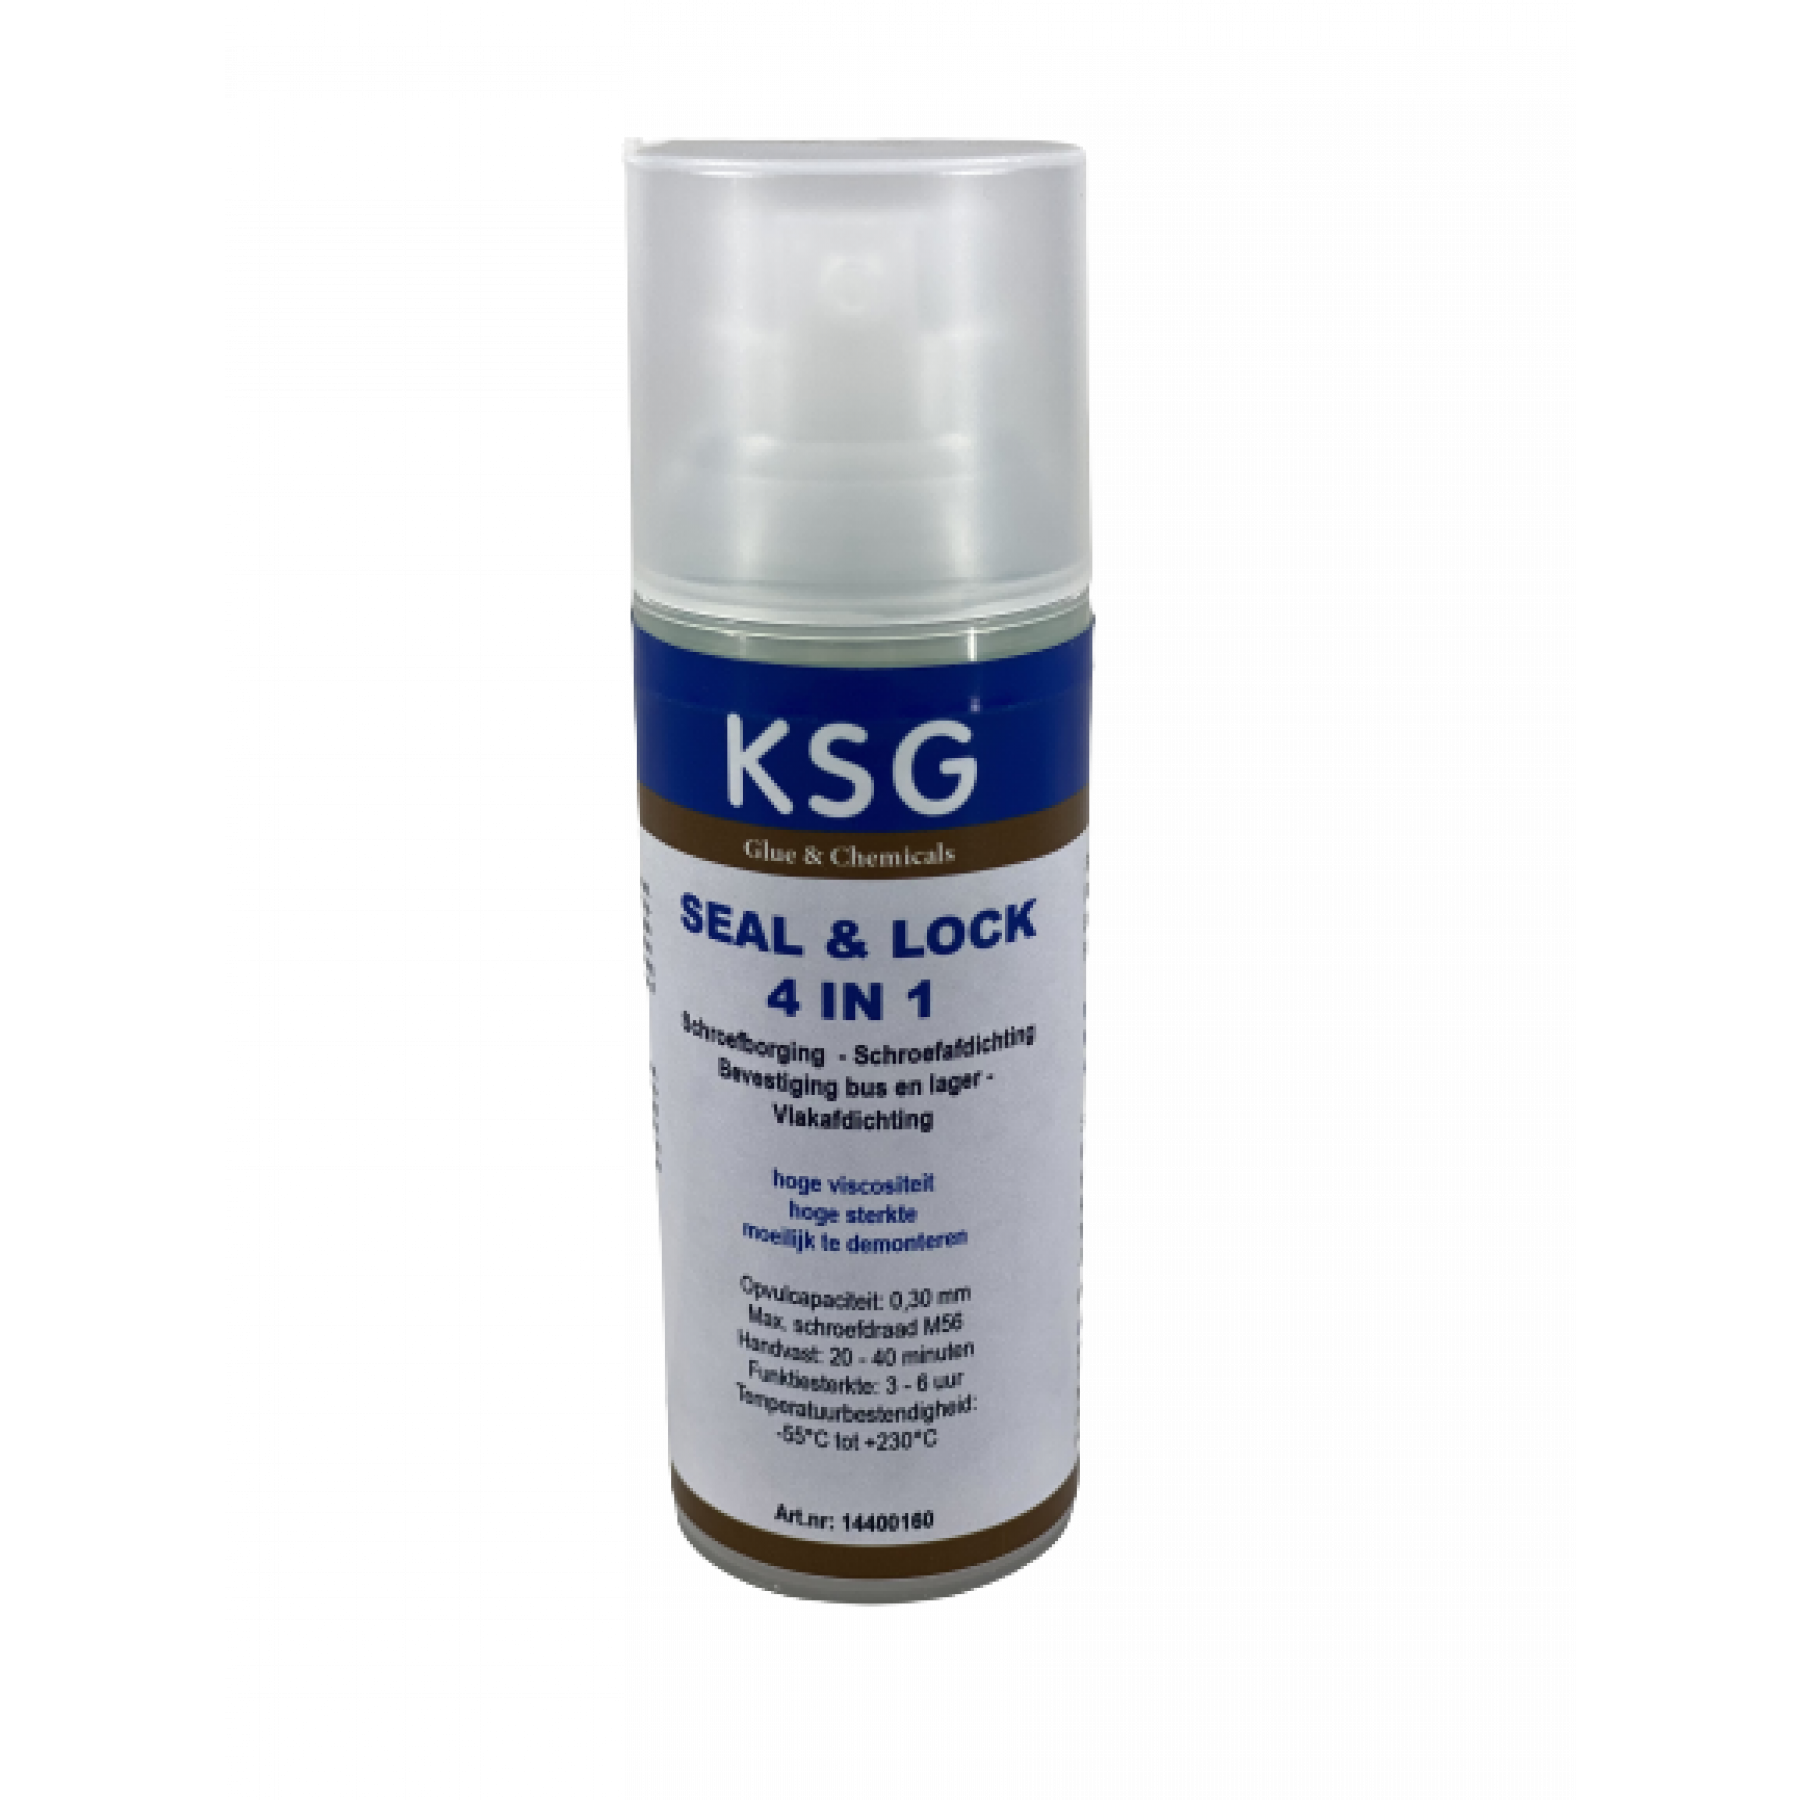 KSG Seal & lock 4 in 1 pompfles 50ml